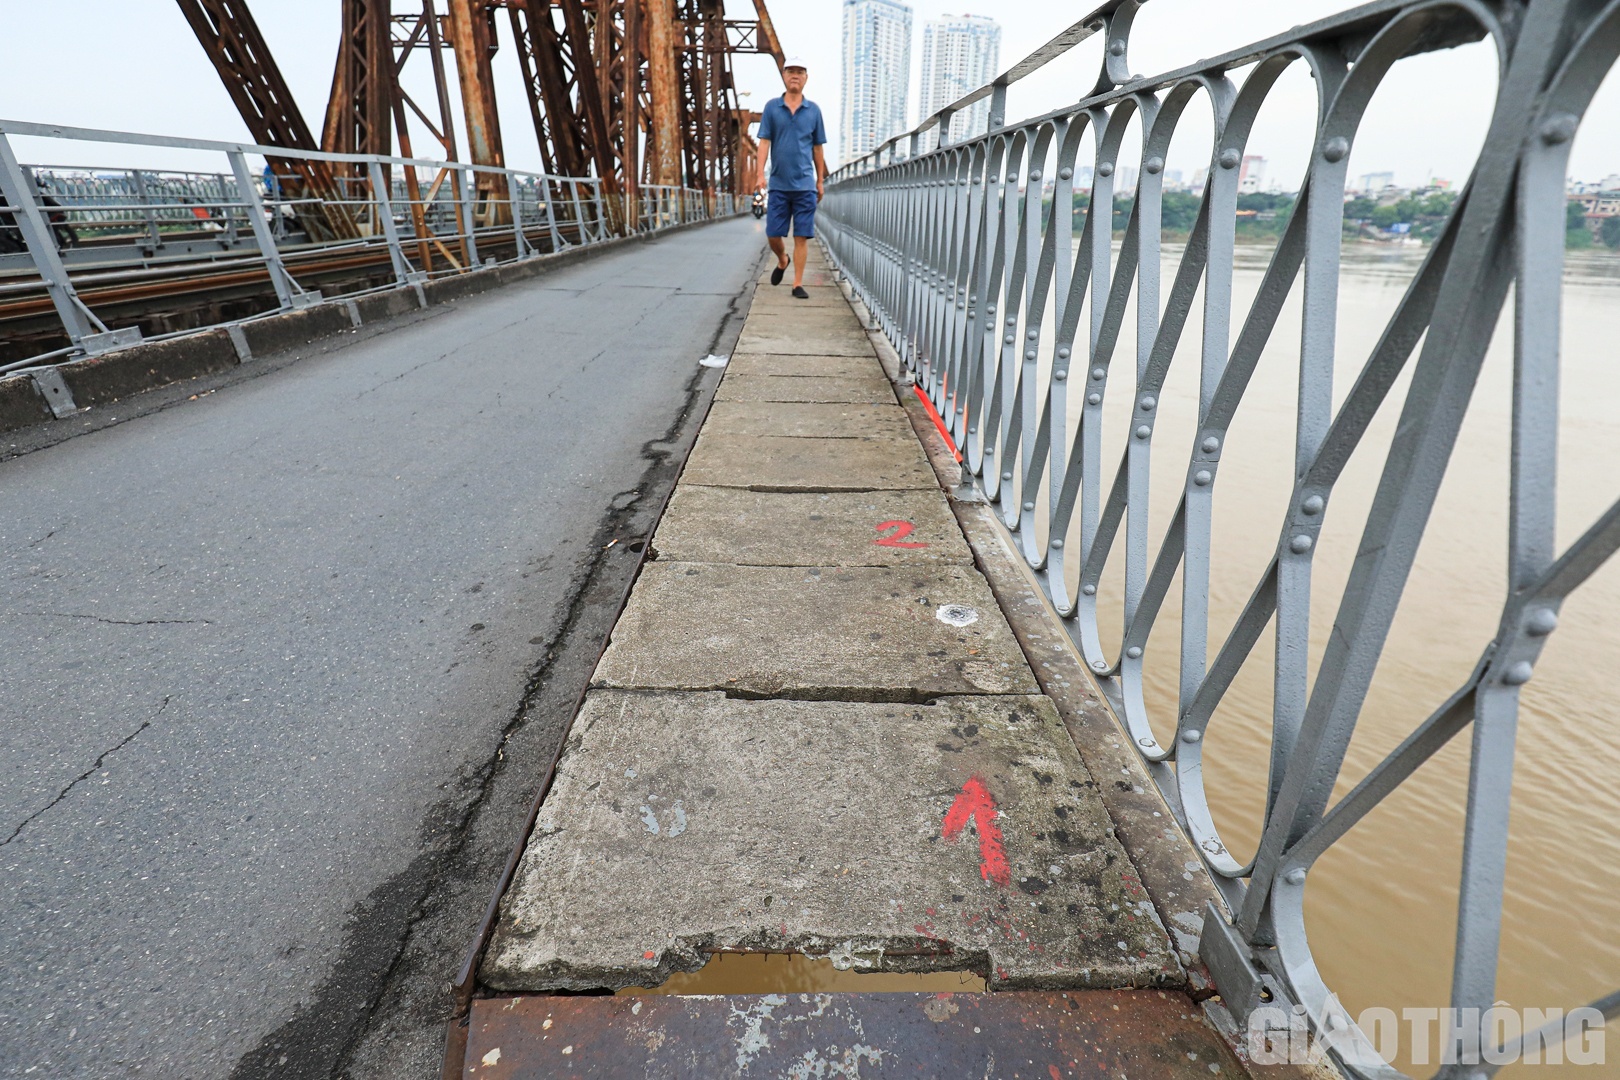 'Ngó lơ' biển cấm, người dân vô tư đi bộ trên cầu Long Biên